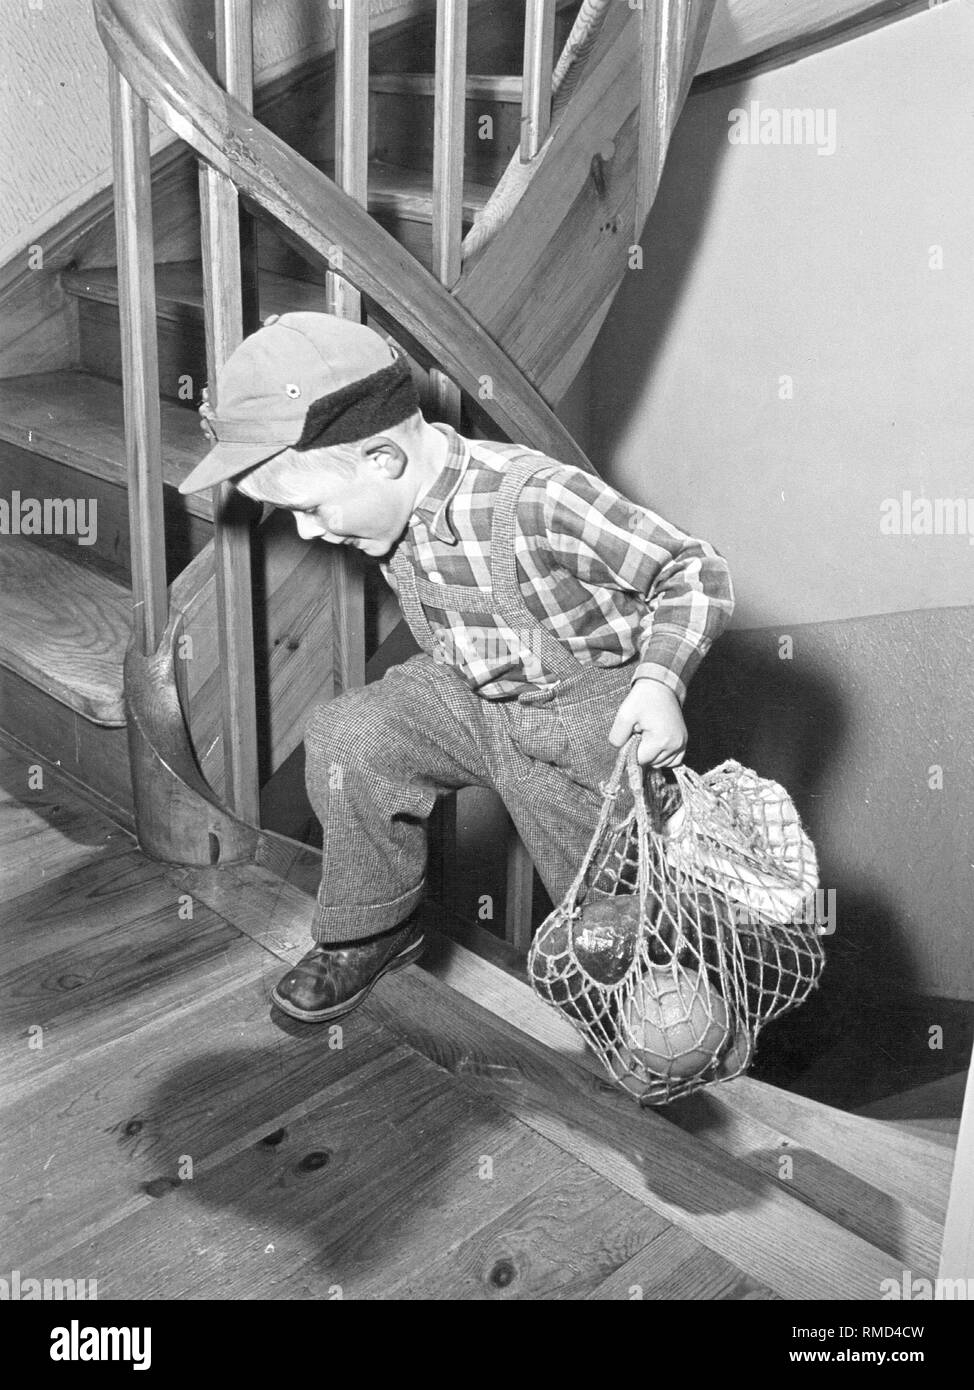 Un enfant porte achat grâce à un escalier. Banque D'Images